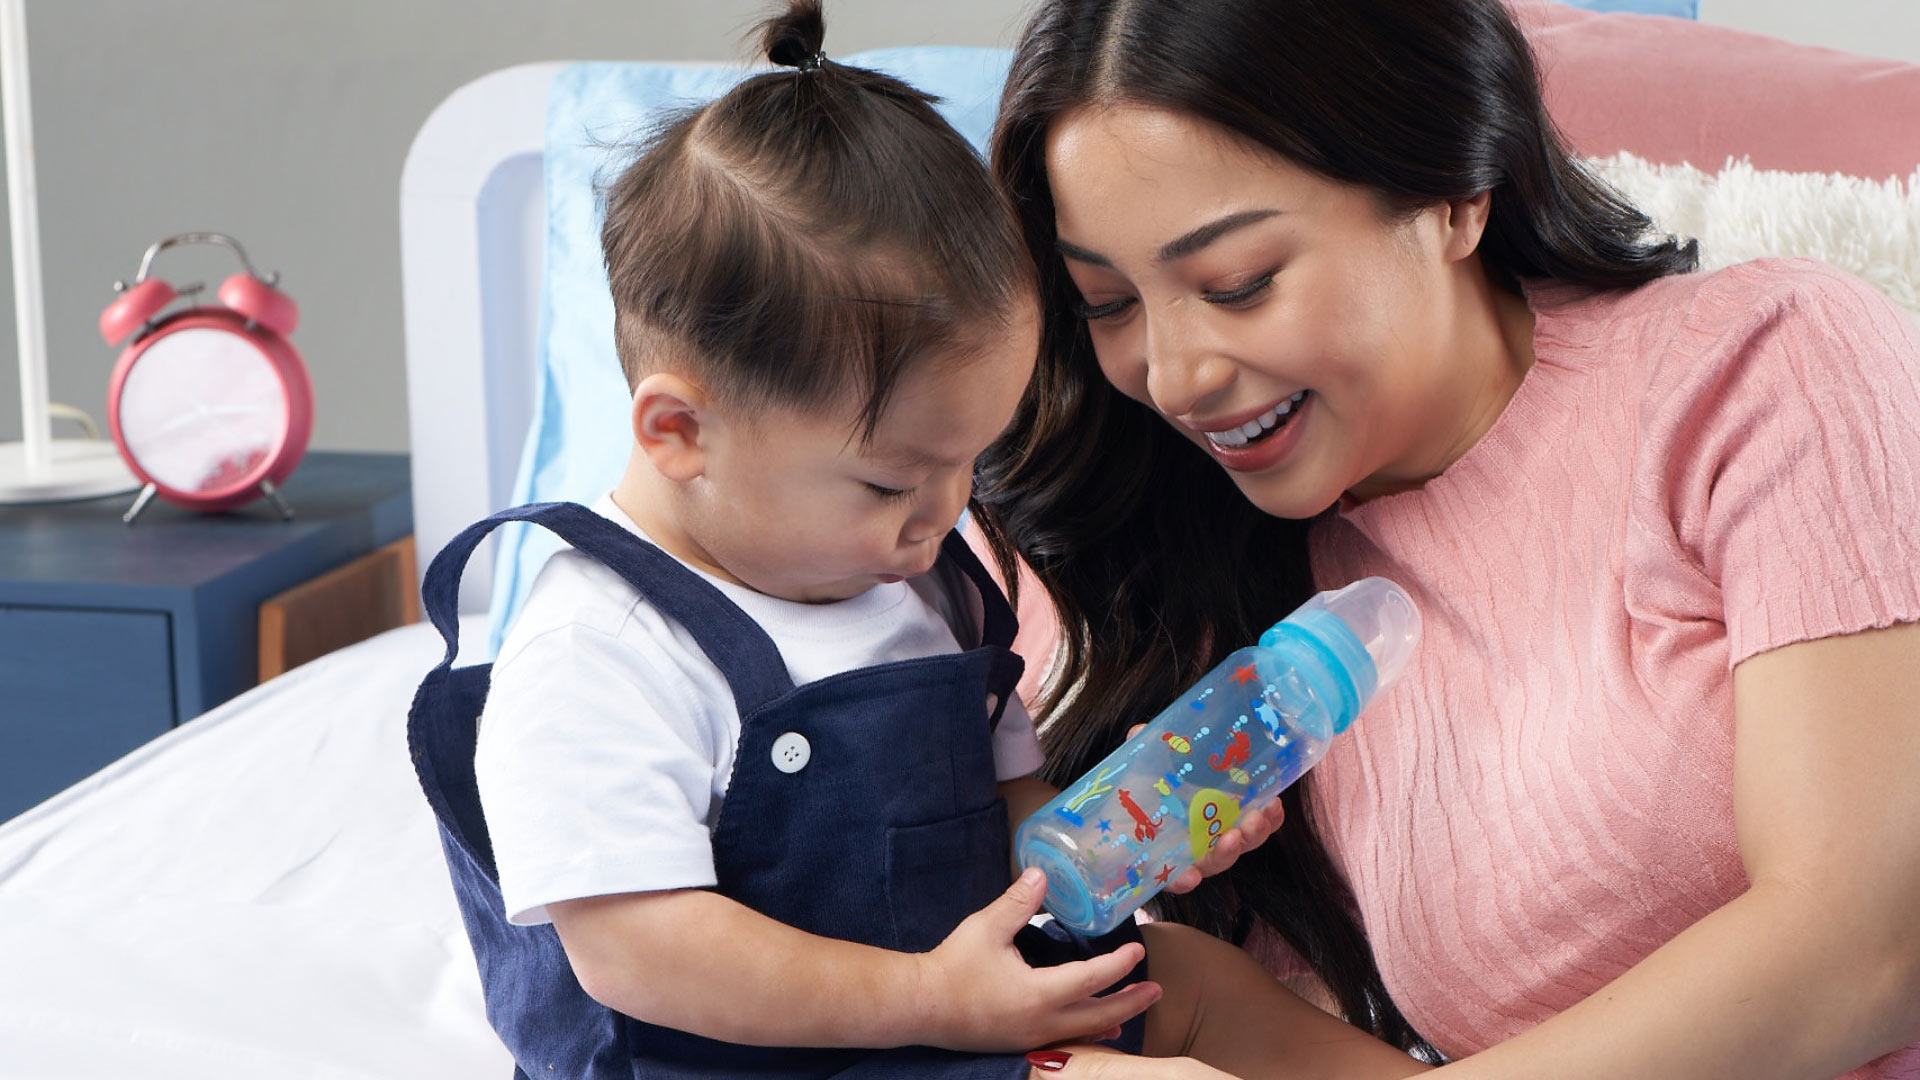 Temukan cara efektif untuk mengatasi sisa aroma lemakk susu menggunakan sabun cuci botol bayi yang aman dan efisien. Baca selengkapnya di sini.